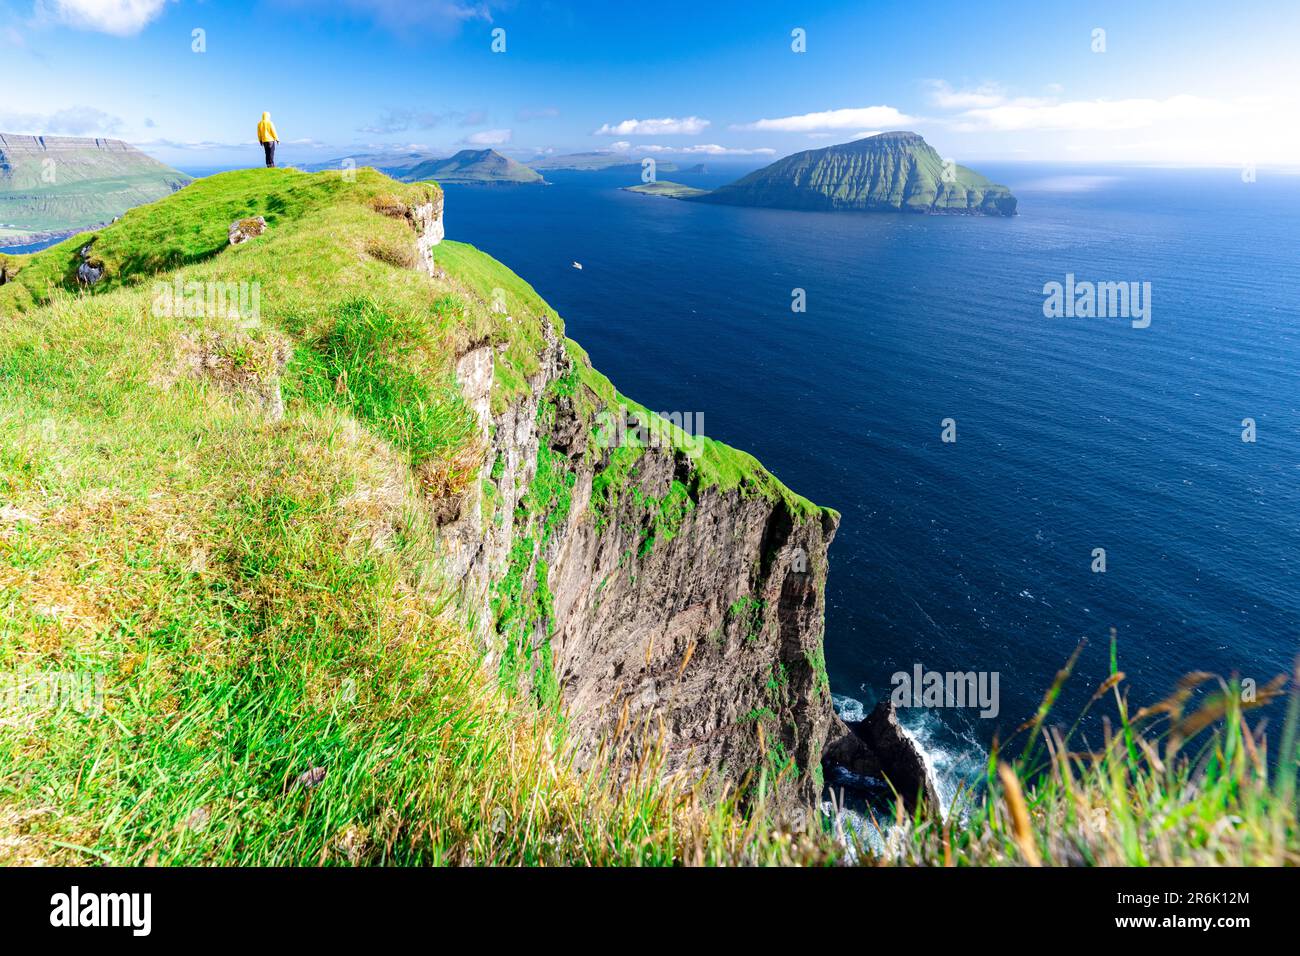 Eine Person bewundert die Aussicht, die auf Klippen über dem Ozean steht, Nordradalur, Streymoy Island, Färöer Inseln, Dänemark, Europa Stockfoto